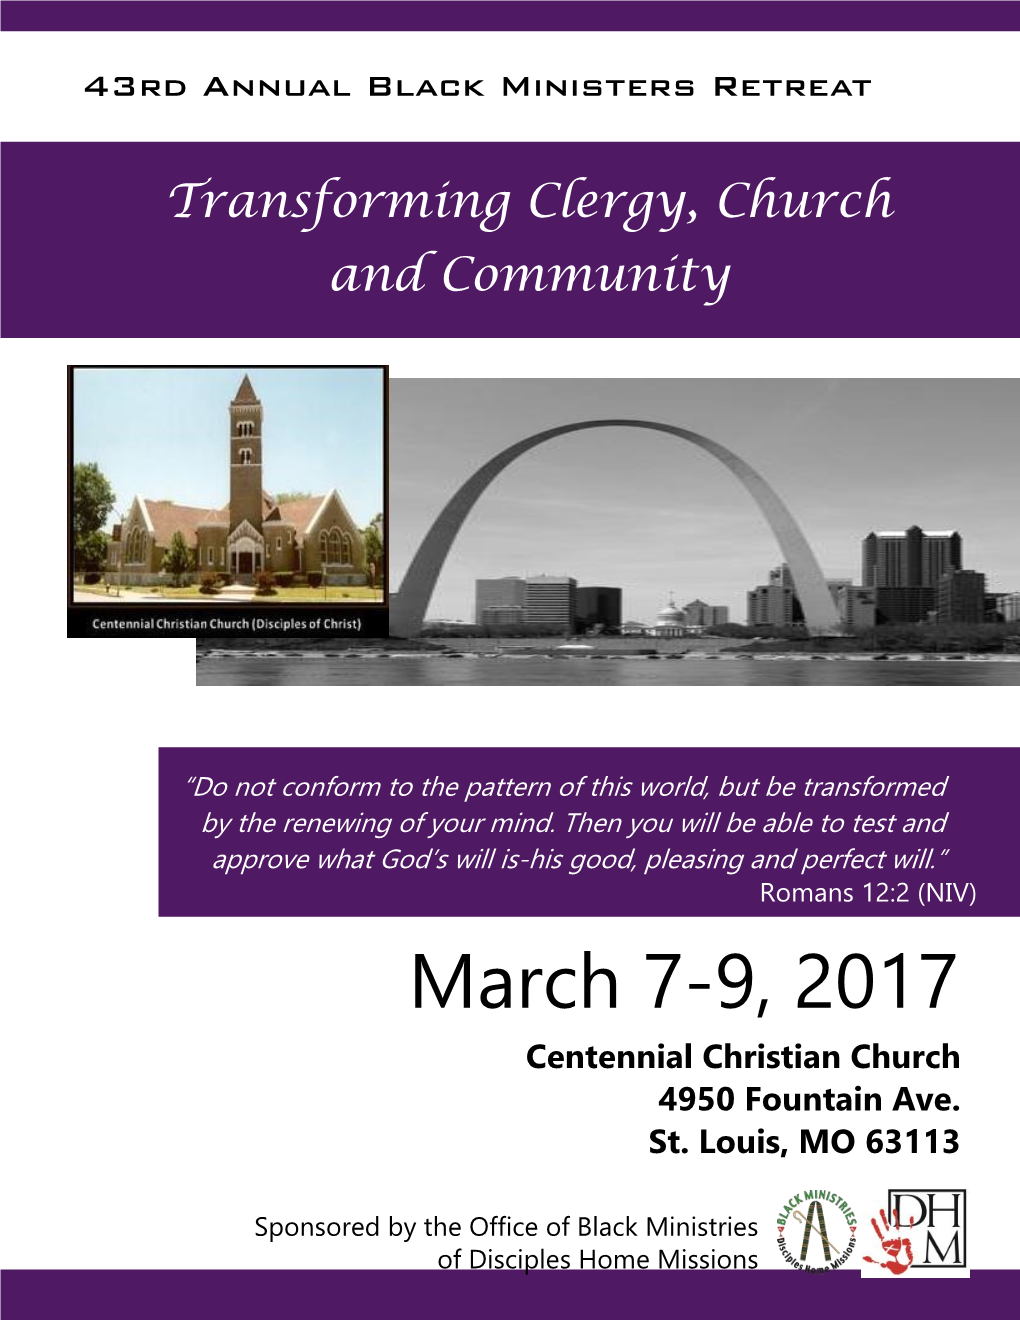 March 7-9, 2017 Centennial Christian Church 4950 Fountain Ave